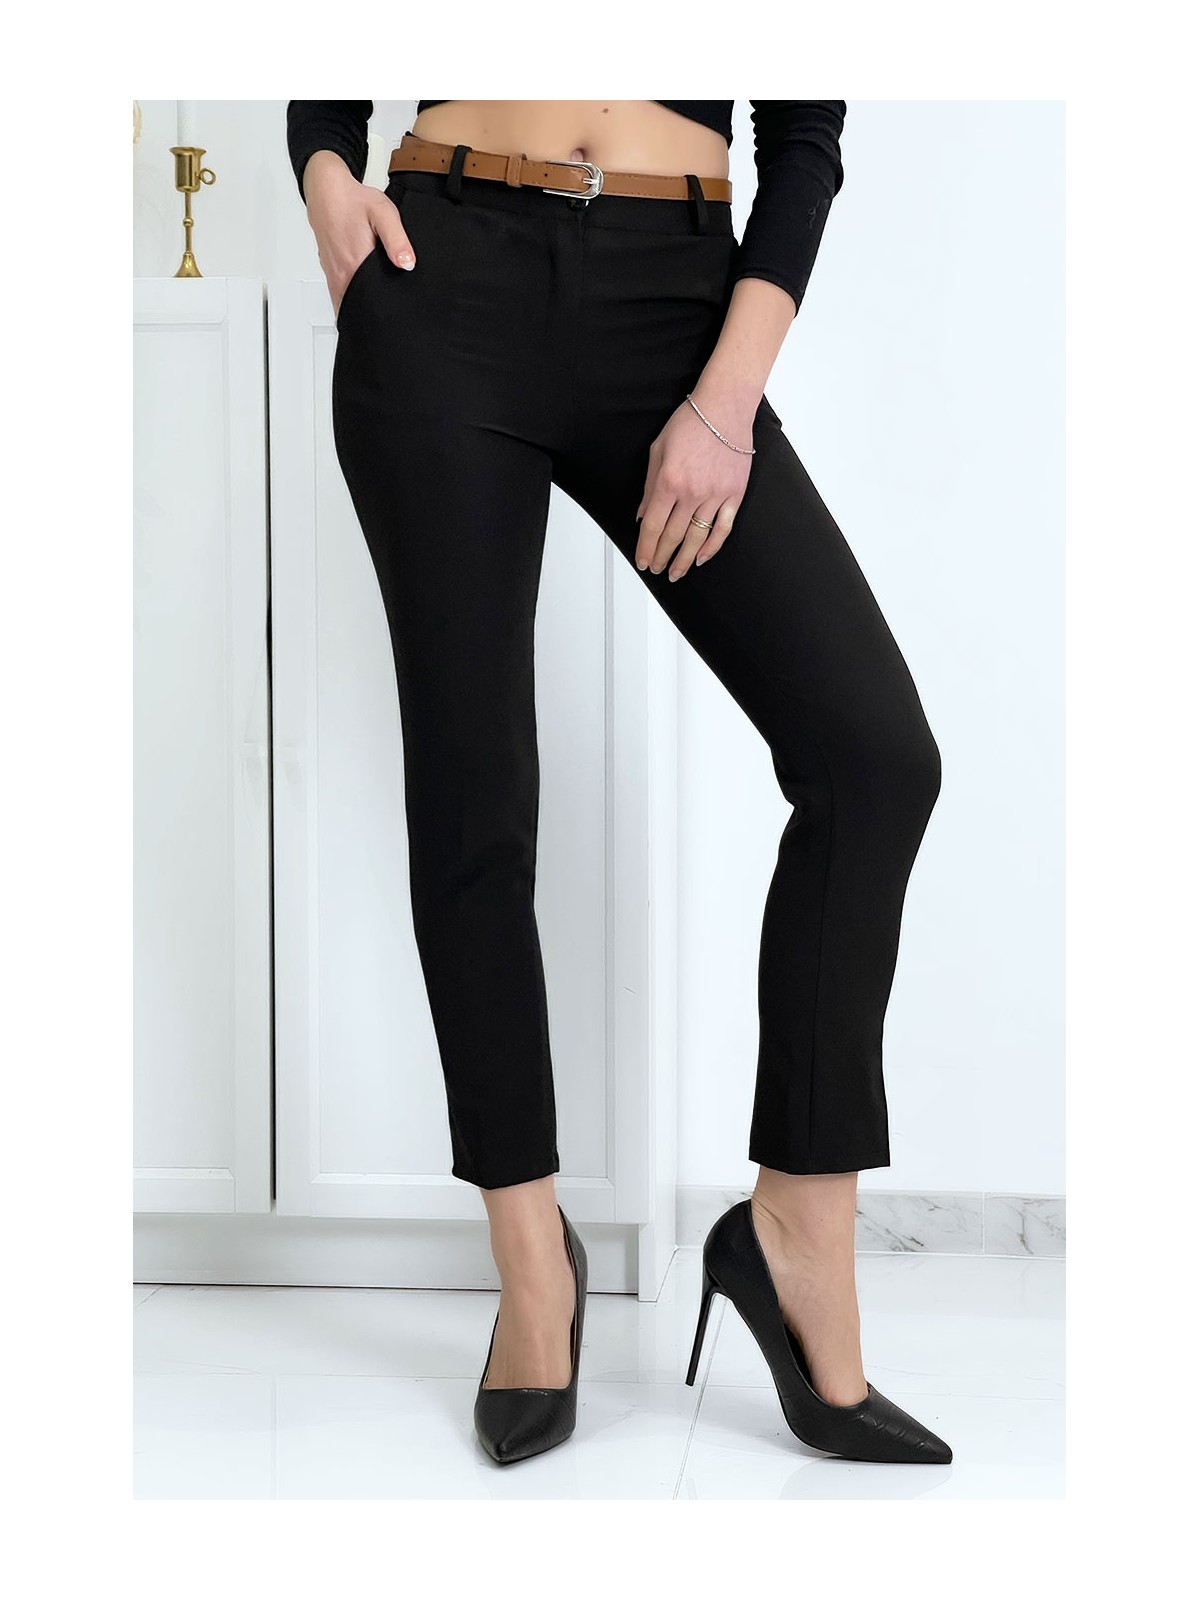 Pantalon working girl noir avec poches et ceinture - 3